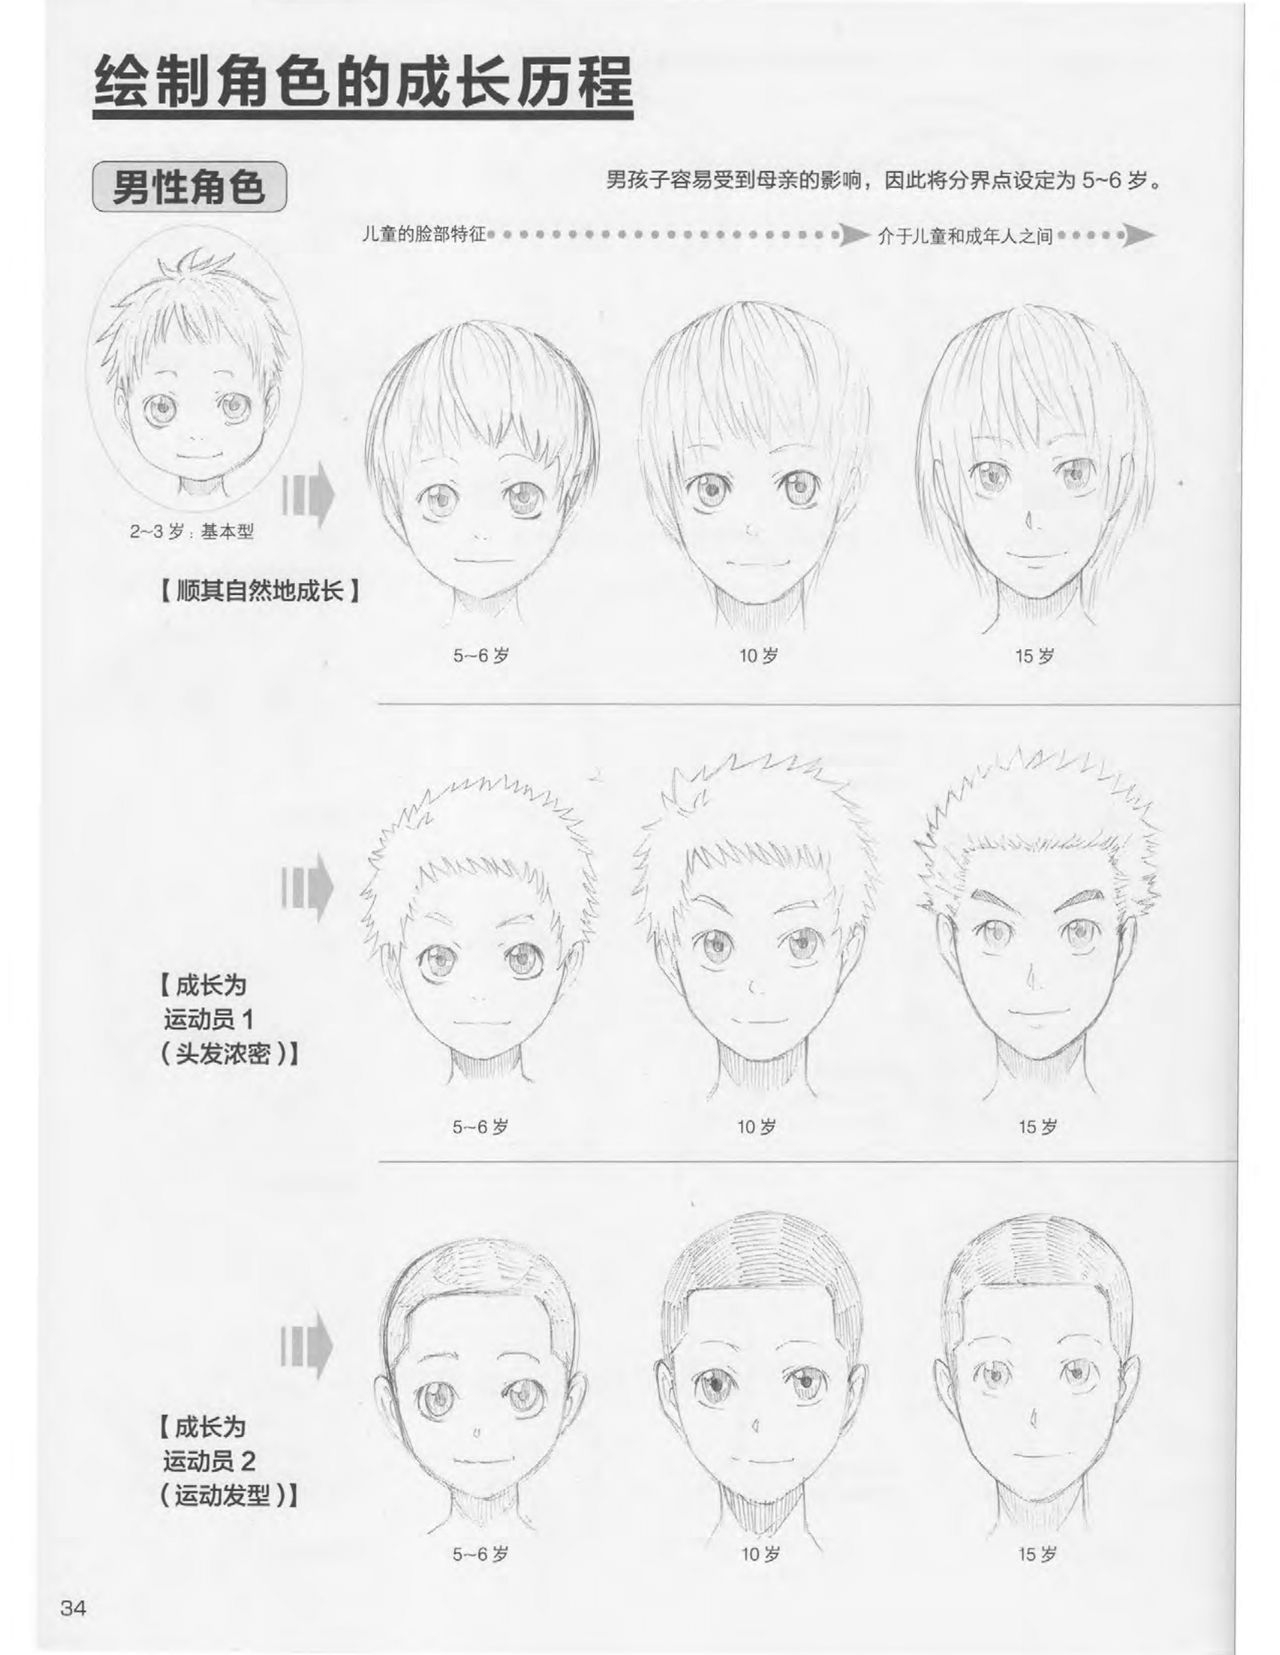 Japanese Manga Master Lecture 3: Lin Akira and Kakumaru Maru Talk About Glamorous Character Modeling 34